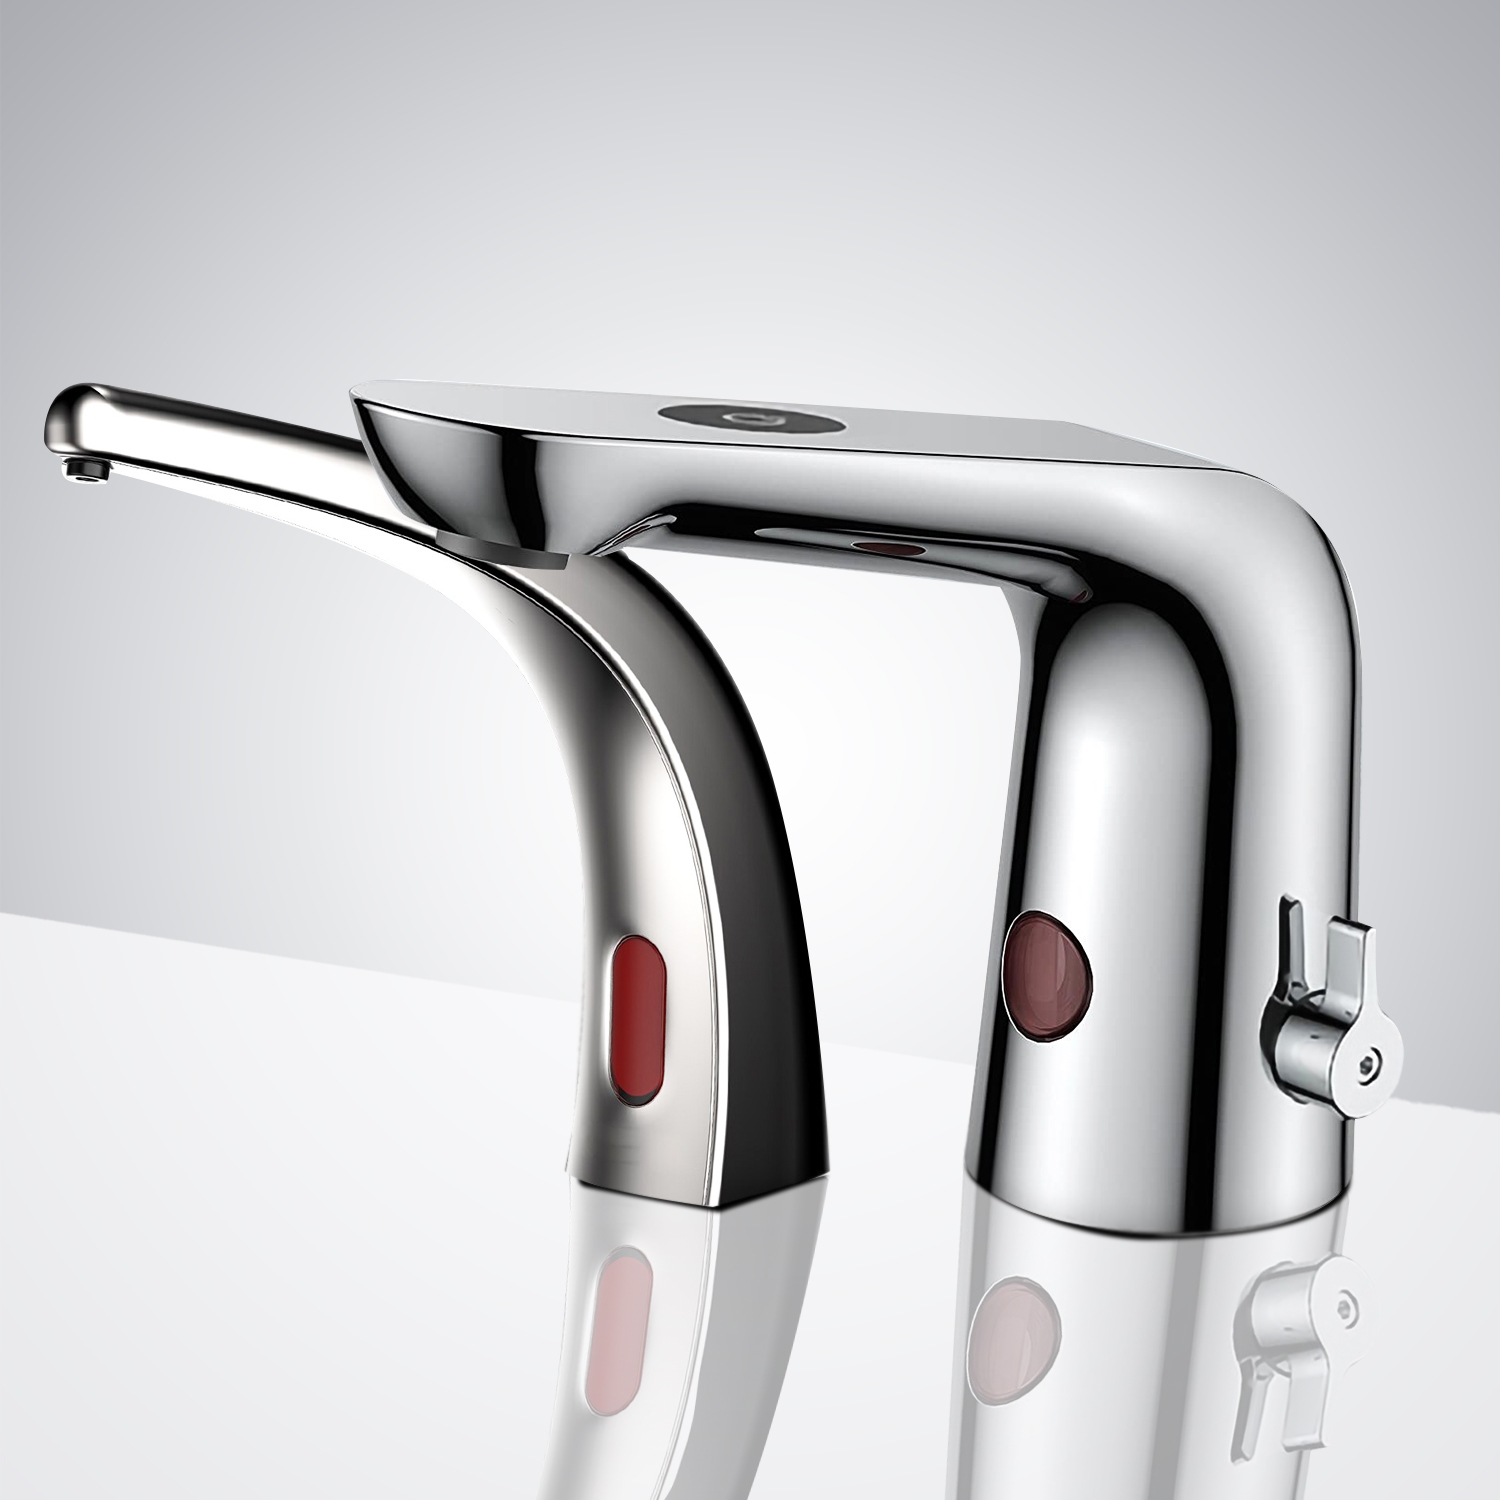 Fontana Creteil Chrome Touchless Motion Sensor Faucet & Automatic Liquid Soap Dispenser for Restrooms